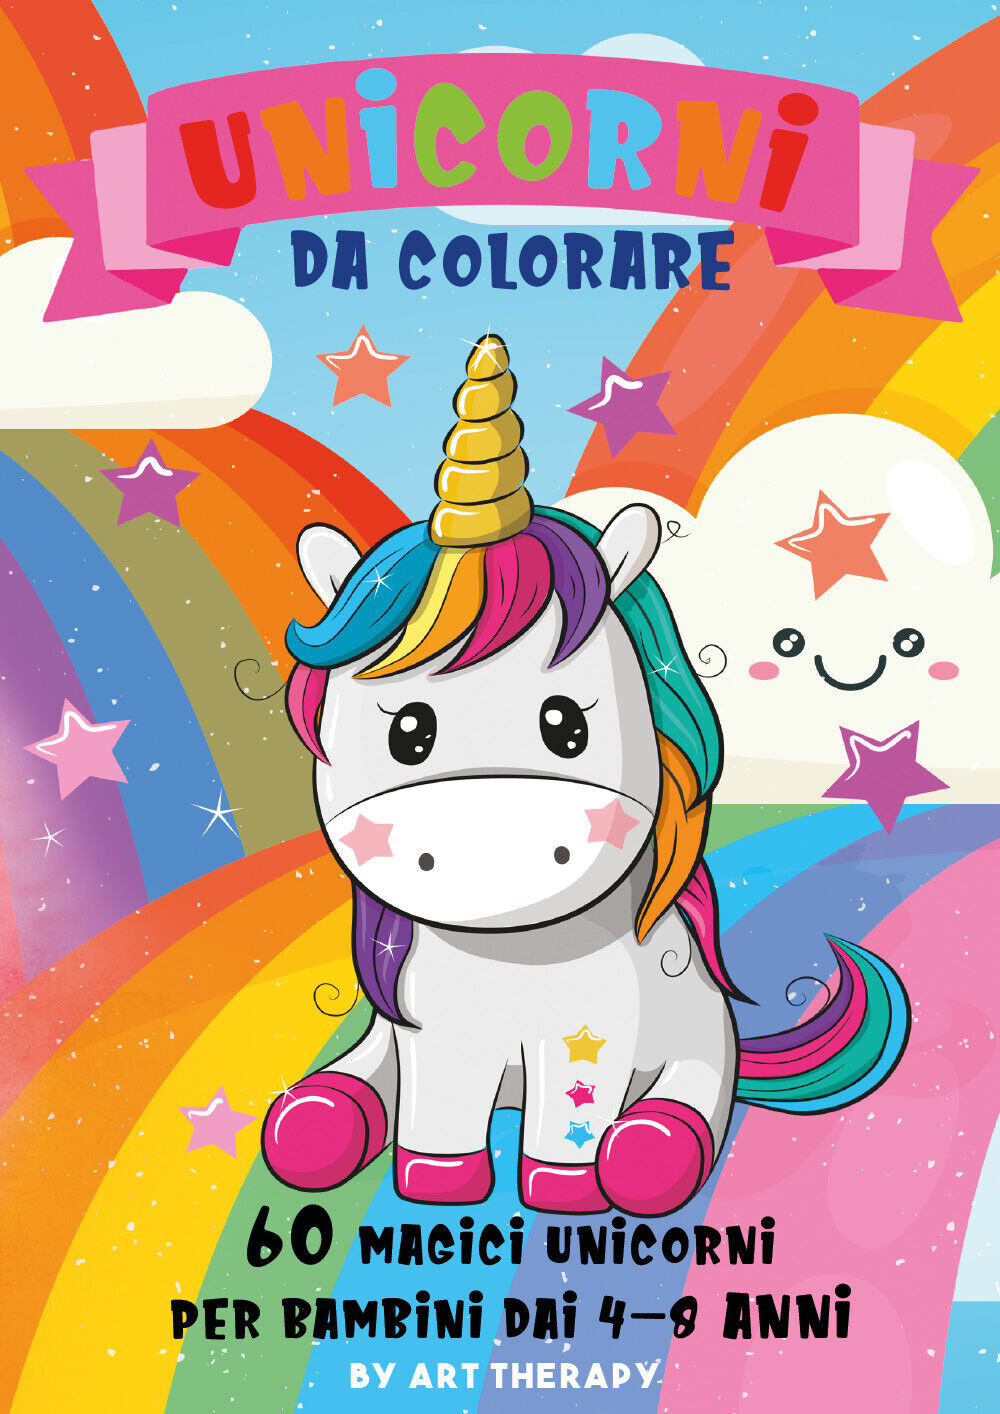 Unicorni da colorare. 60 magici unicorni per bambini dai 4-8 anni. Ediz. illustr